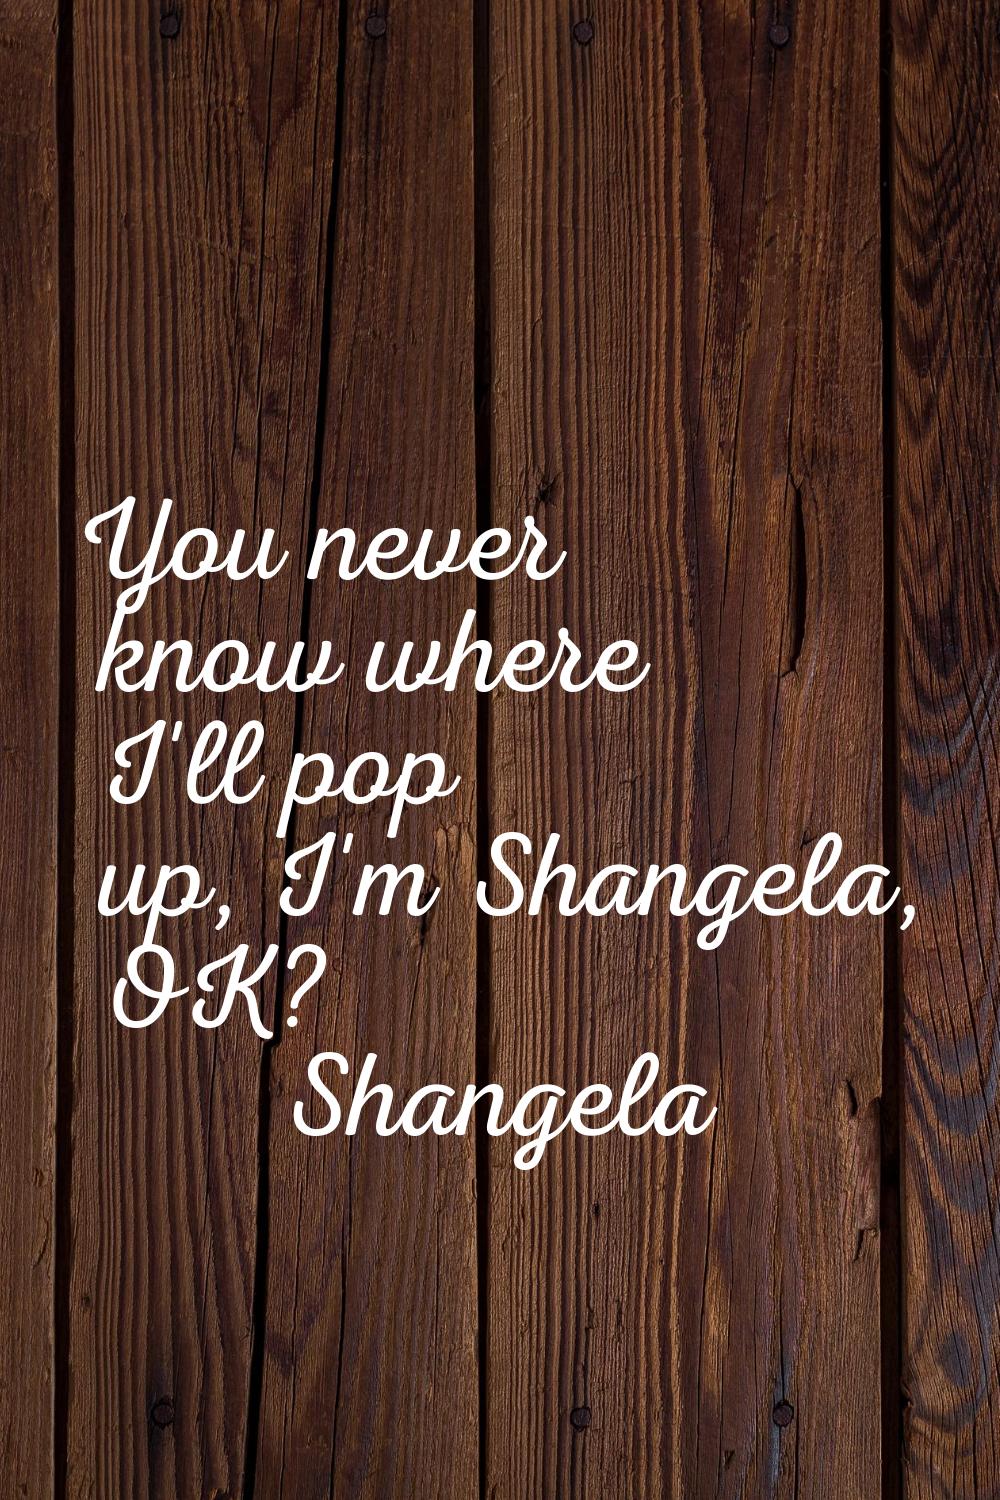 You never know where I'll pop up, I'm Shangela, OK?